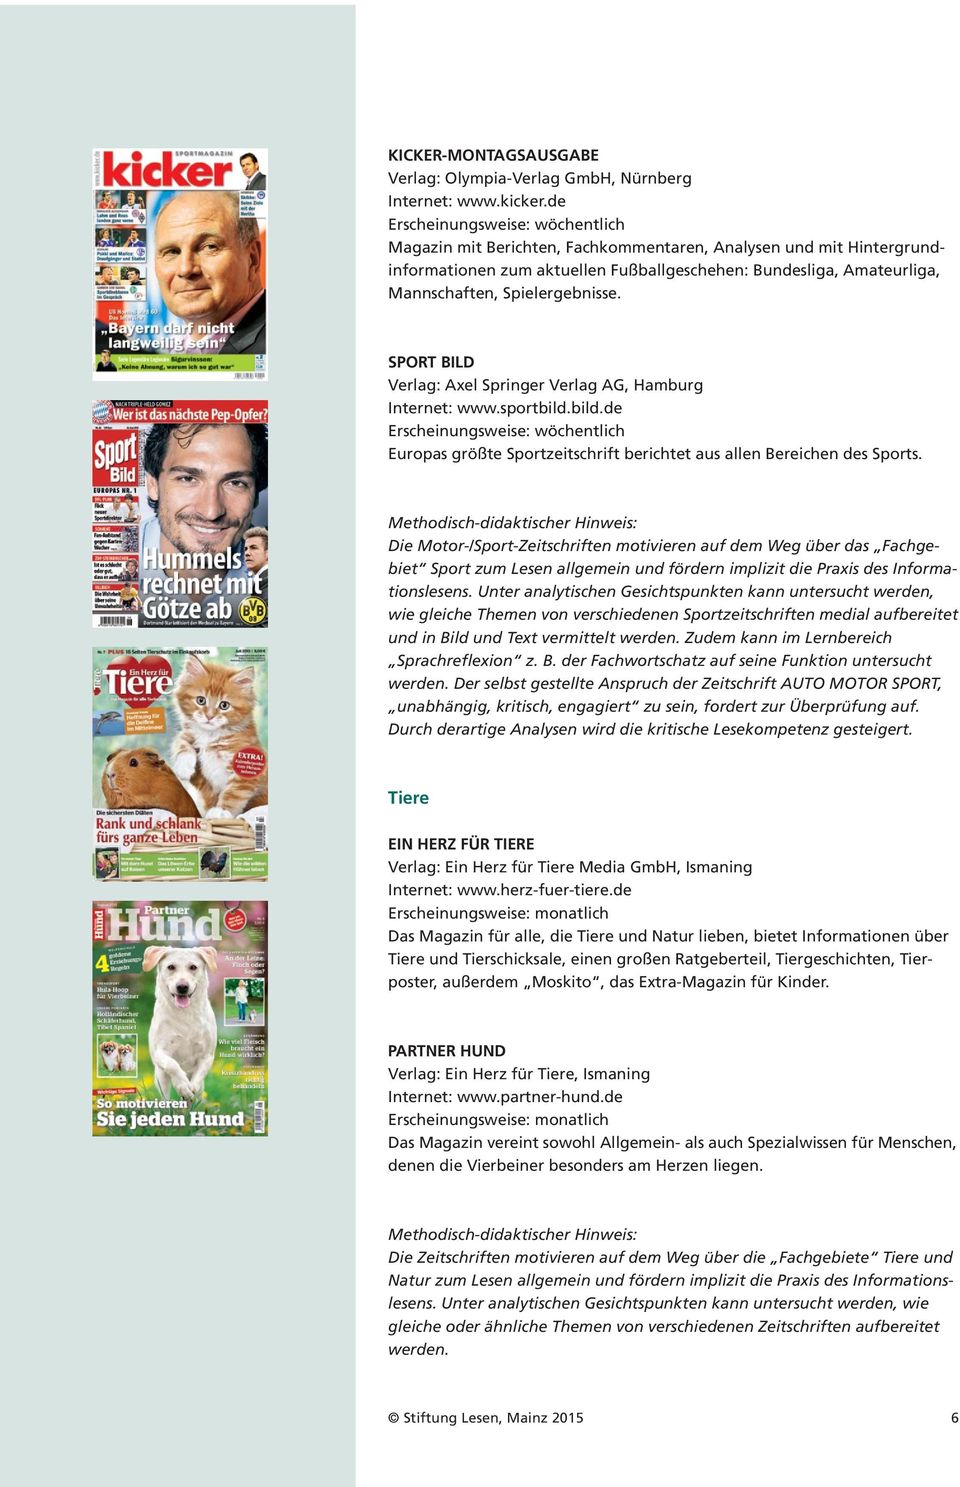 SPORT BILD Verlag: Axel Springer Verlag AG, Hamburg Internet: www.sportbild.bild.de Europas größte Sportzeitschrift berichtet aus allen Bereichen des Sports.